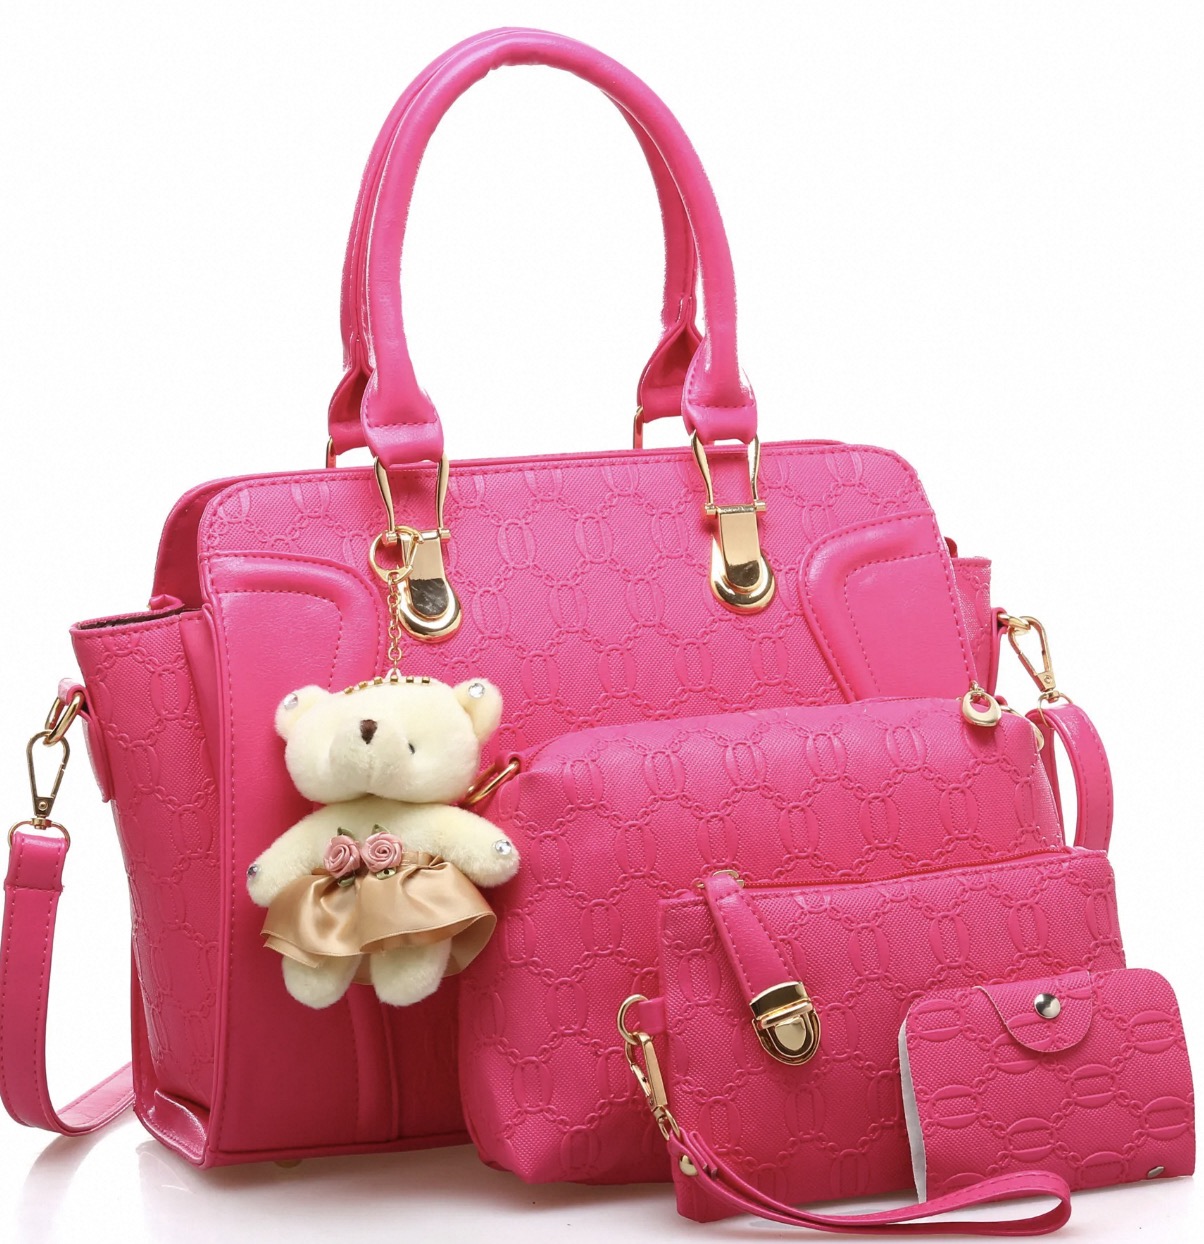 cute handbags